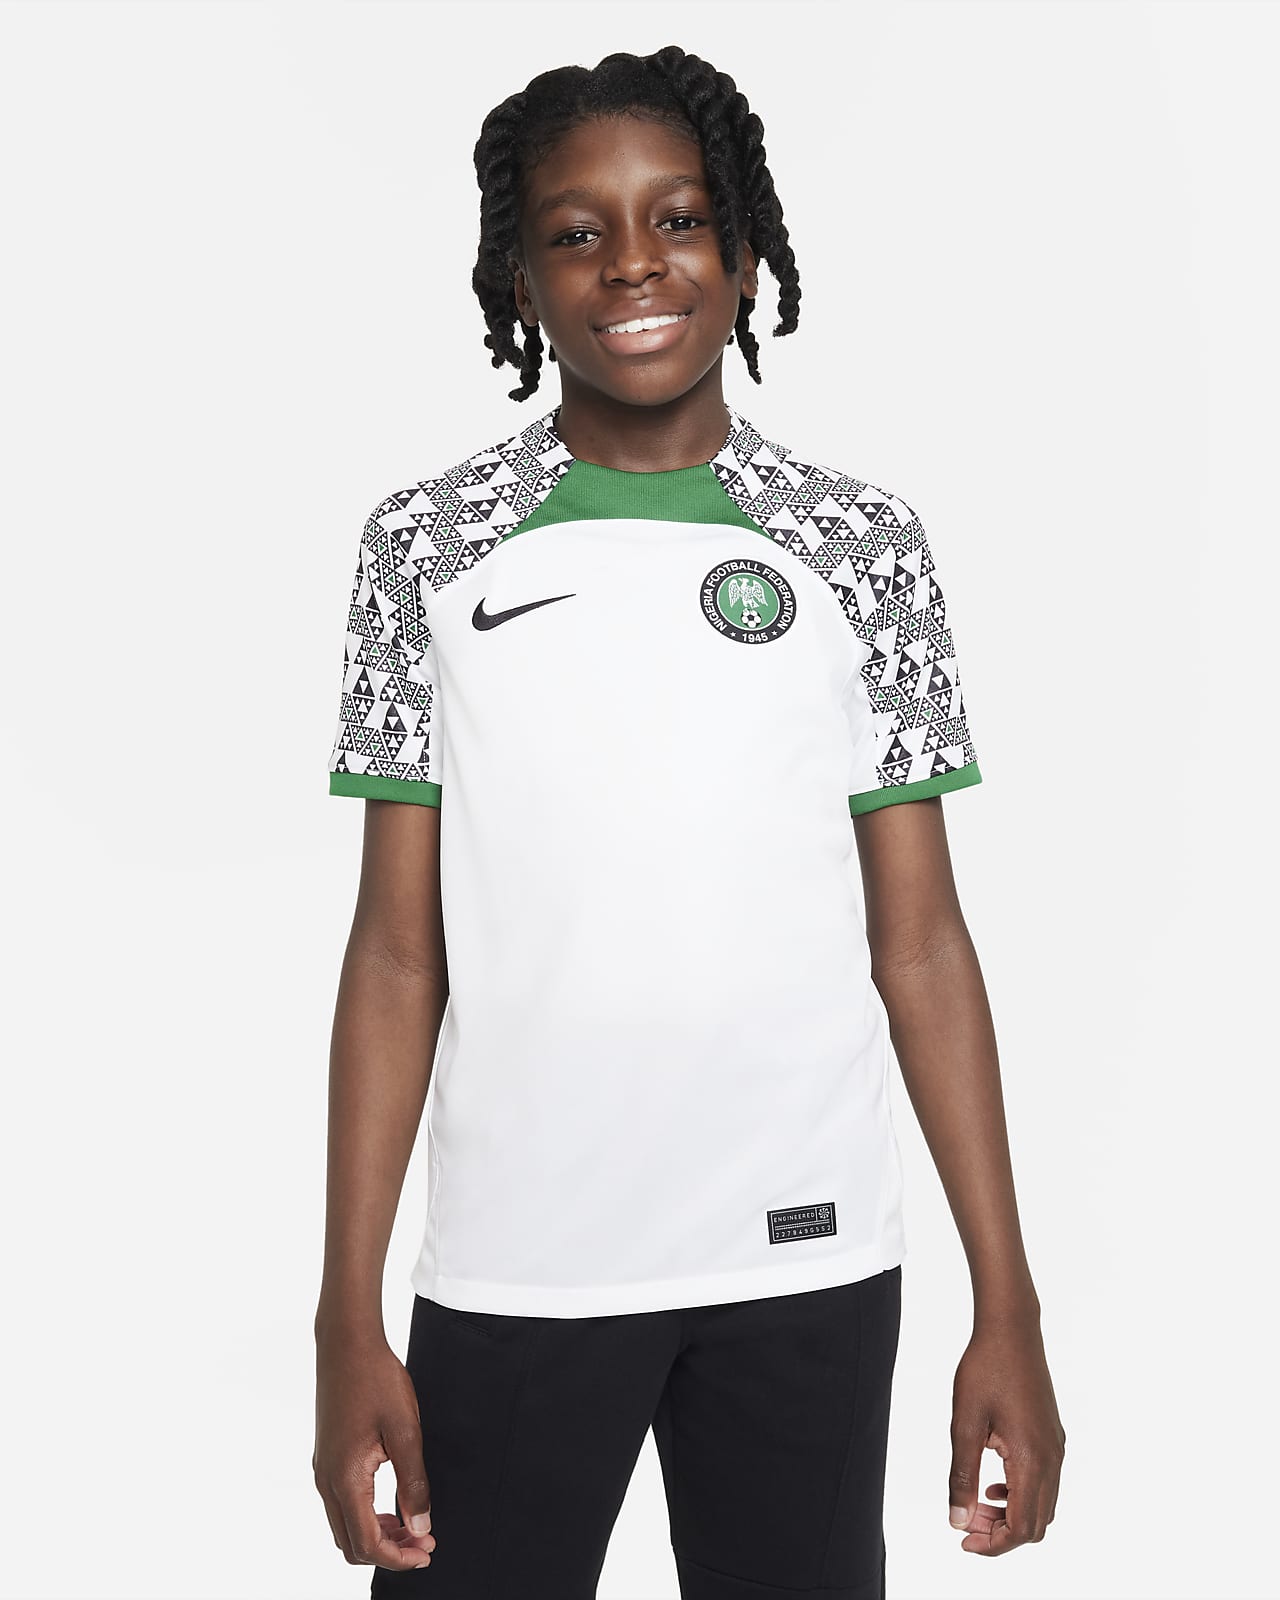 nigeria soccer jerseys